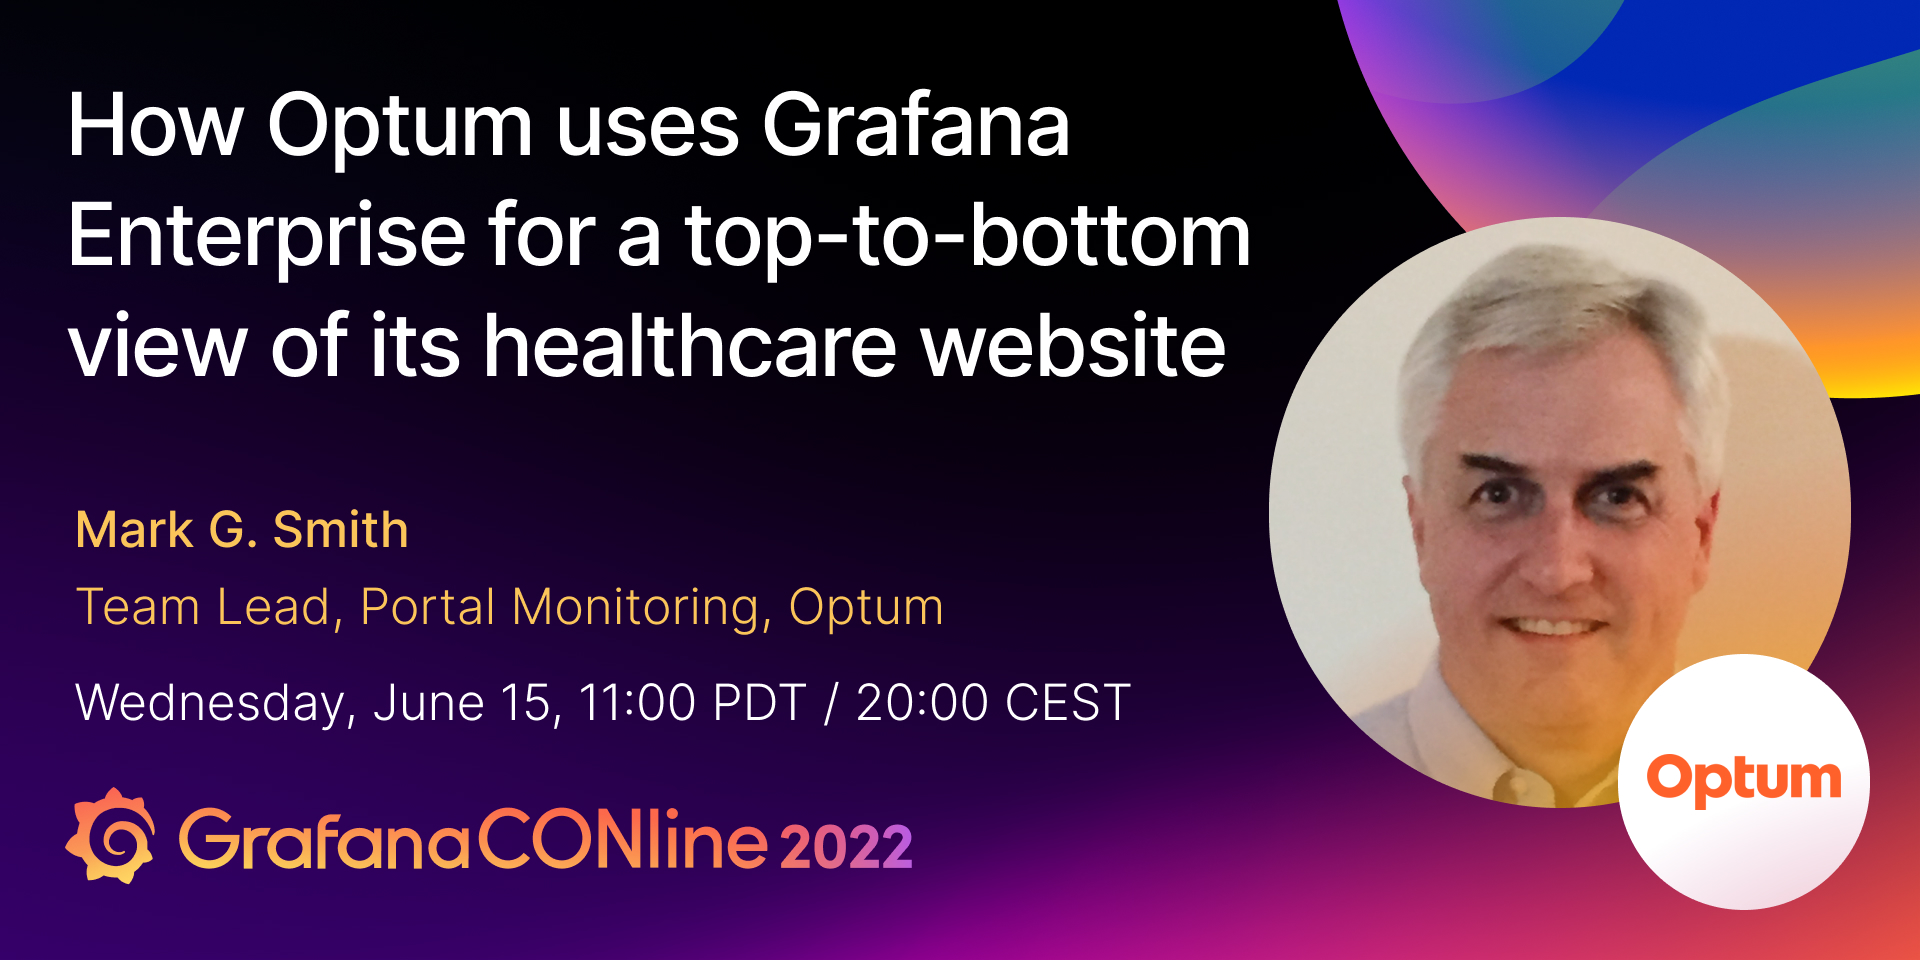 如何使用Grafana为联合健康集团企业为其医疗网站有一个全面的观点